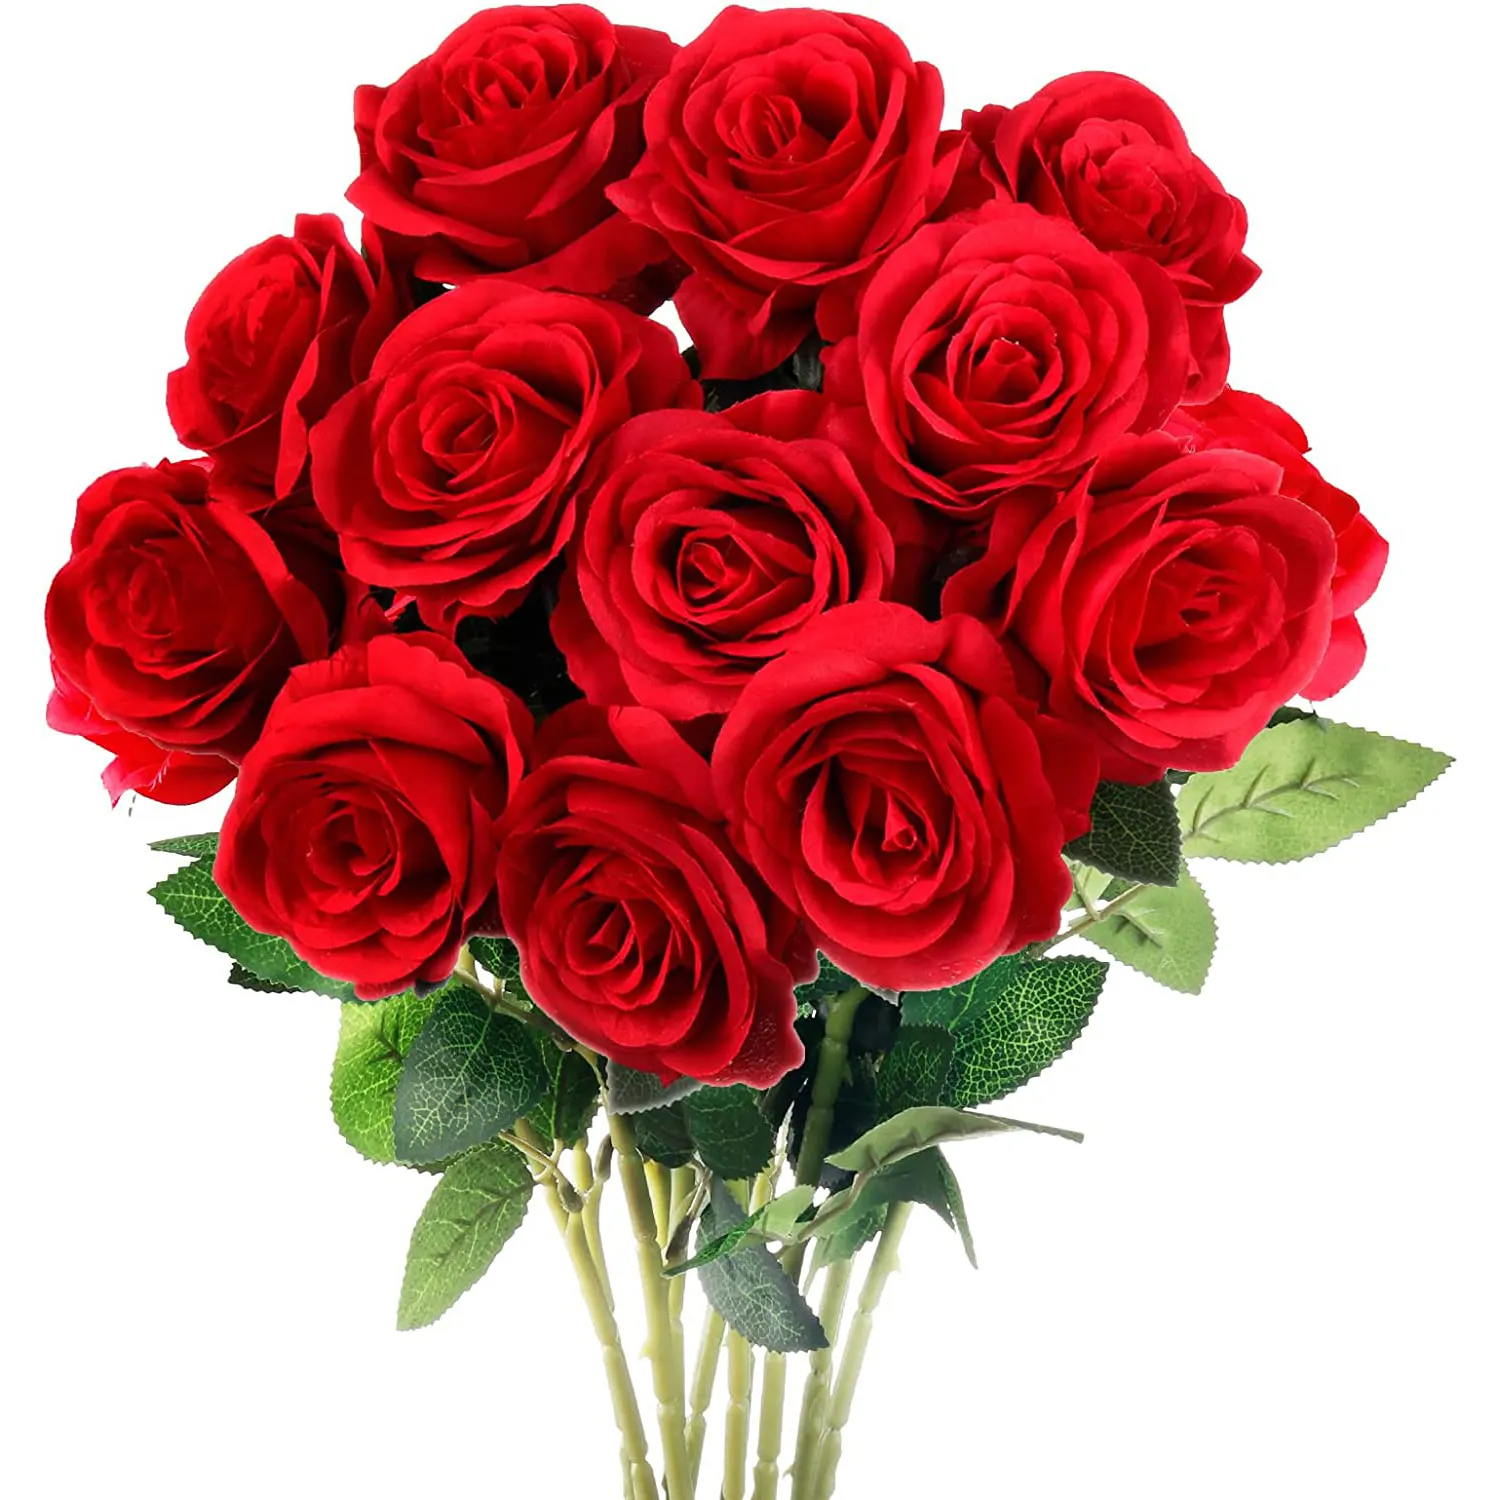 12 PCS Rose Flores Artificiais Rosas De Seda Branca com Hastes Falso Realista Subiu Buquês de Flores para o Casamento